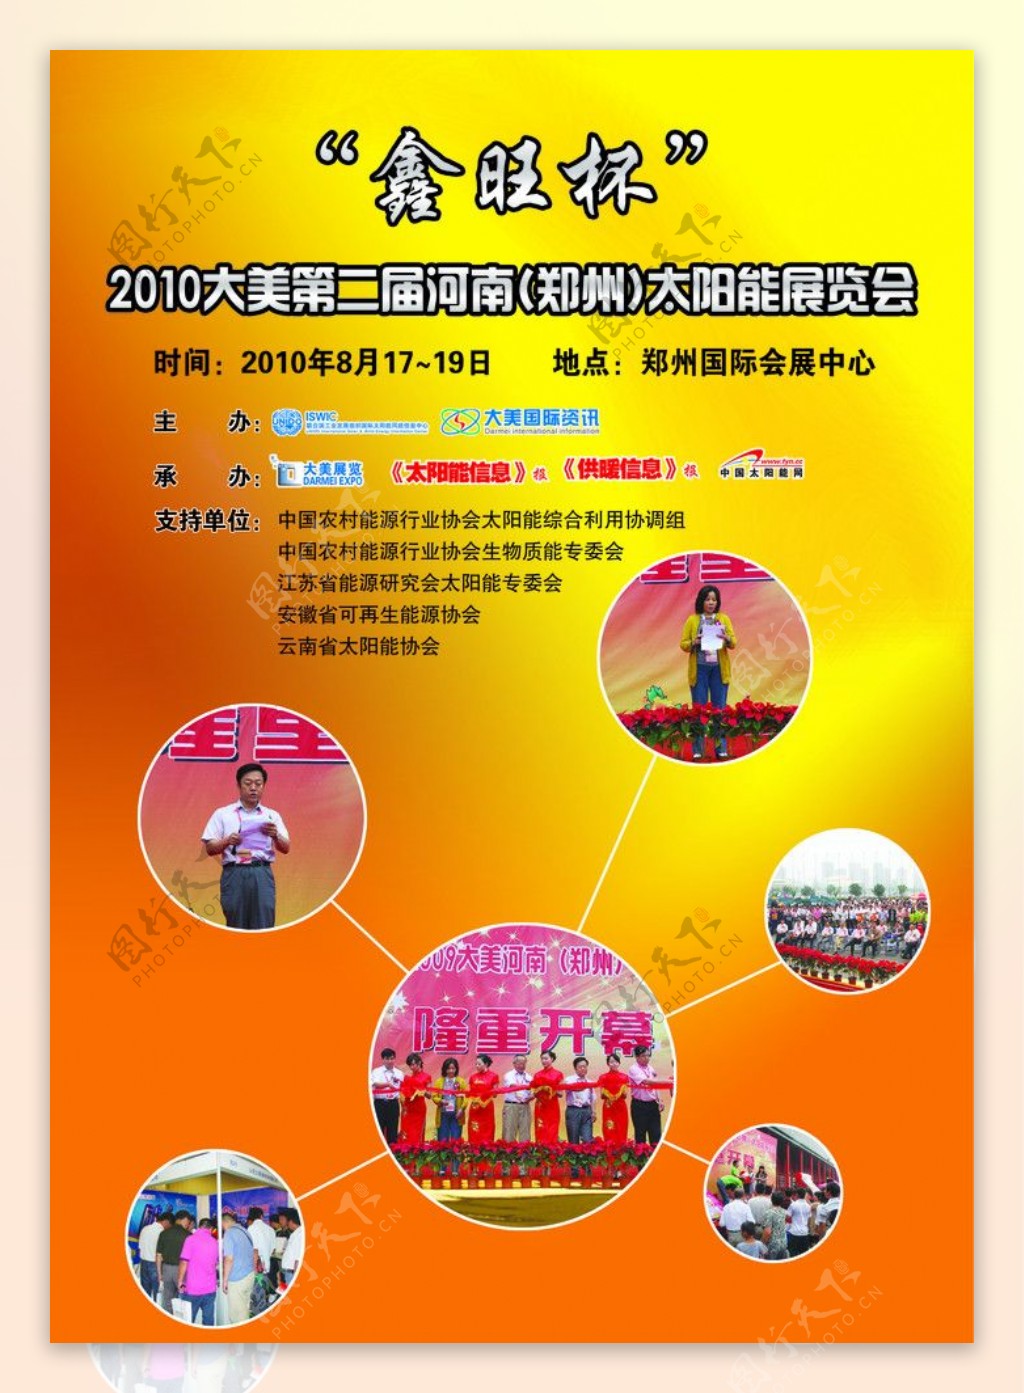 郑州太阳能展览会图片